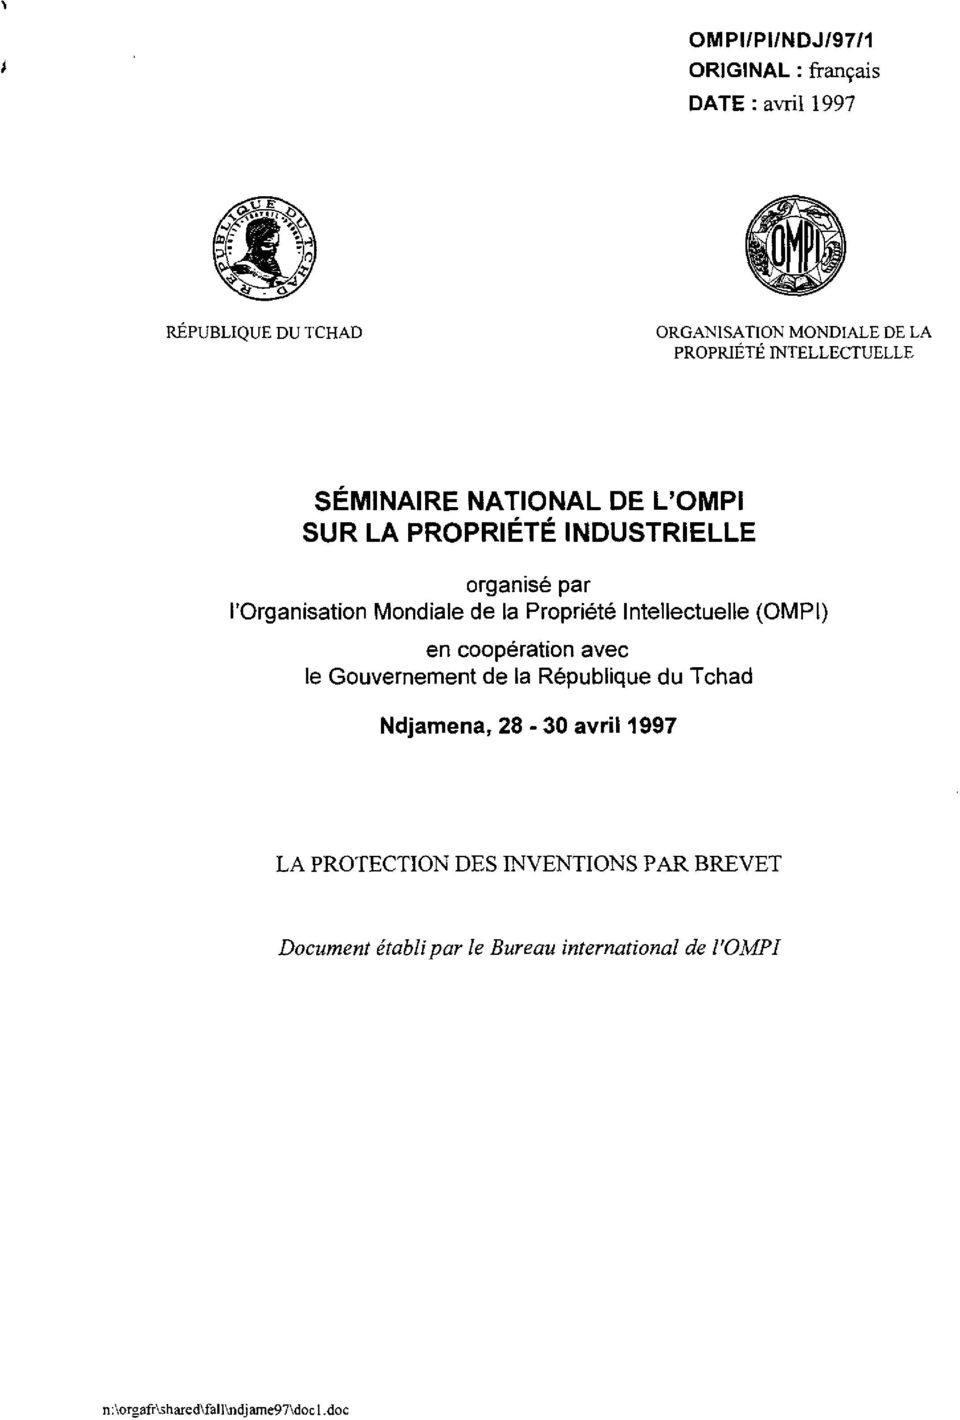 Propriete Intellectuelle (OMPI) en cooperation avec Ie Gouvernement de la Repubiique du Tchad Ndjamena, 28-30 avril 1997